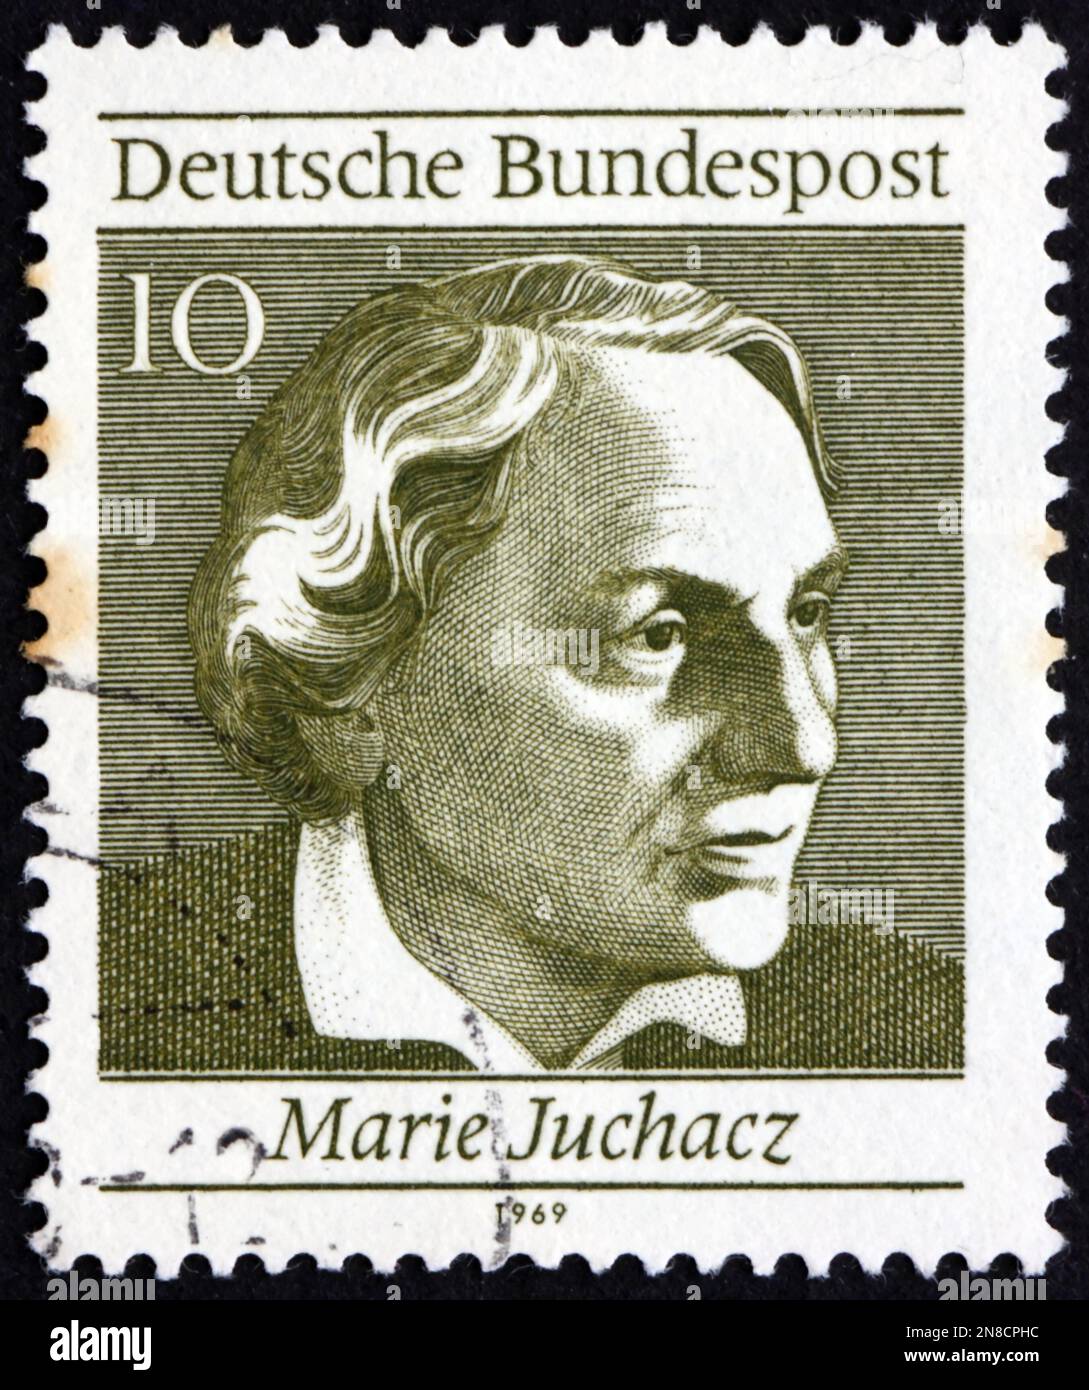 ALEMANIA - CIRCA 1969: Un sello impreso en Alemania muestra a Marie Juchacz (1879-1956), fue una reformista social alemana, la primera mujer miembro del Reichstag, a. Foto de stock